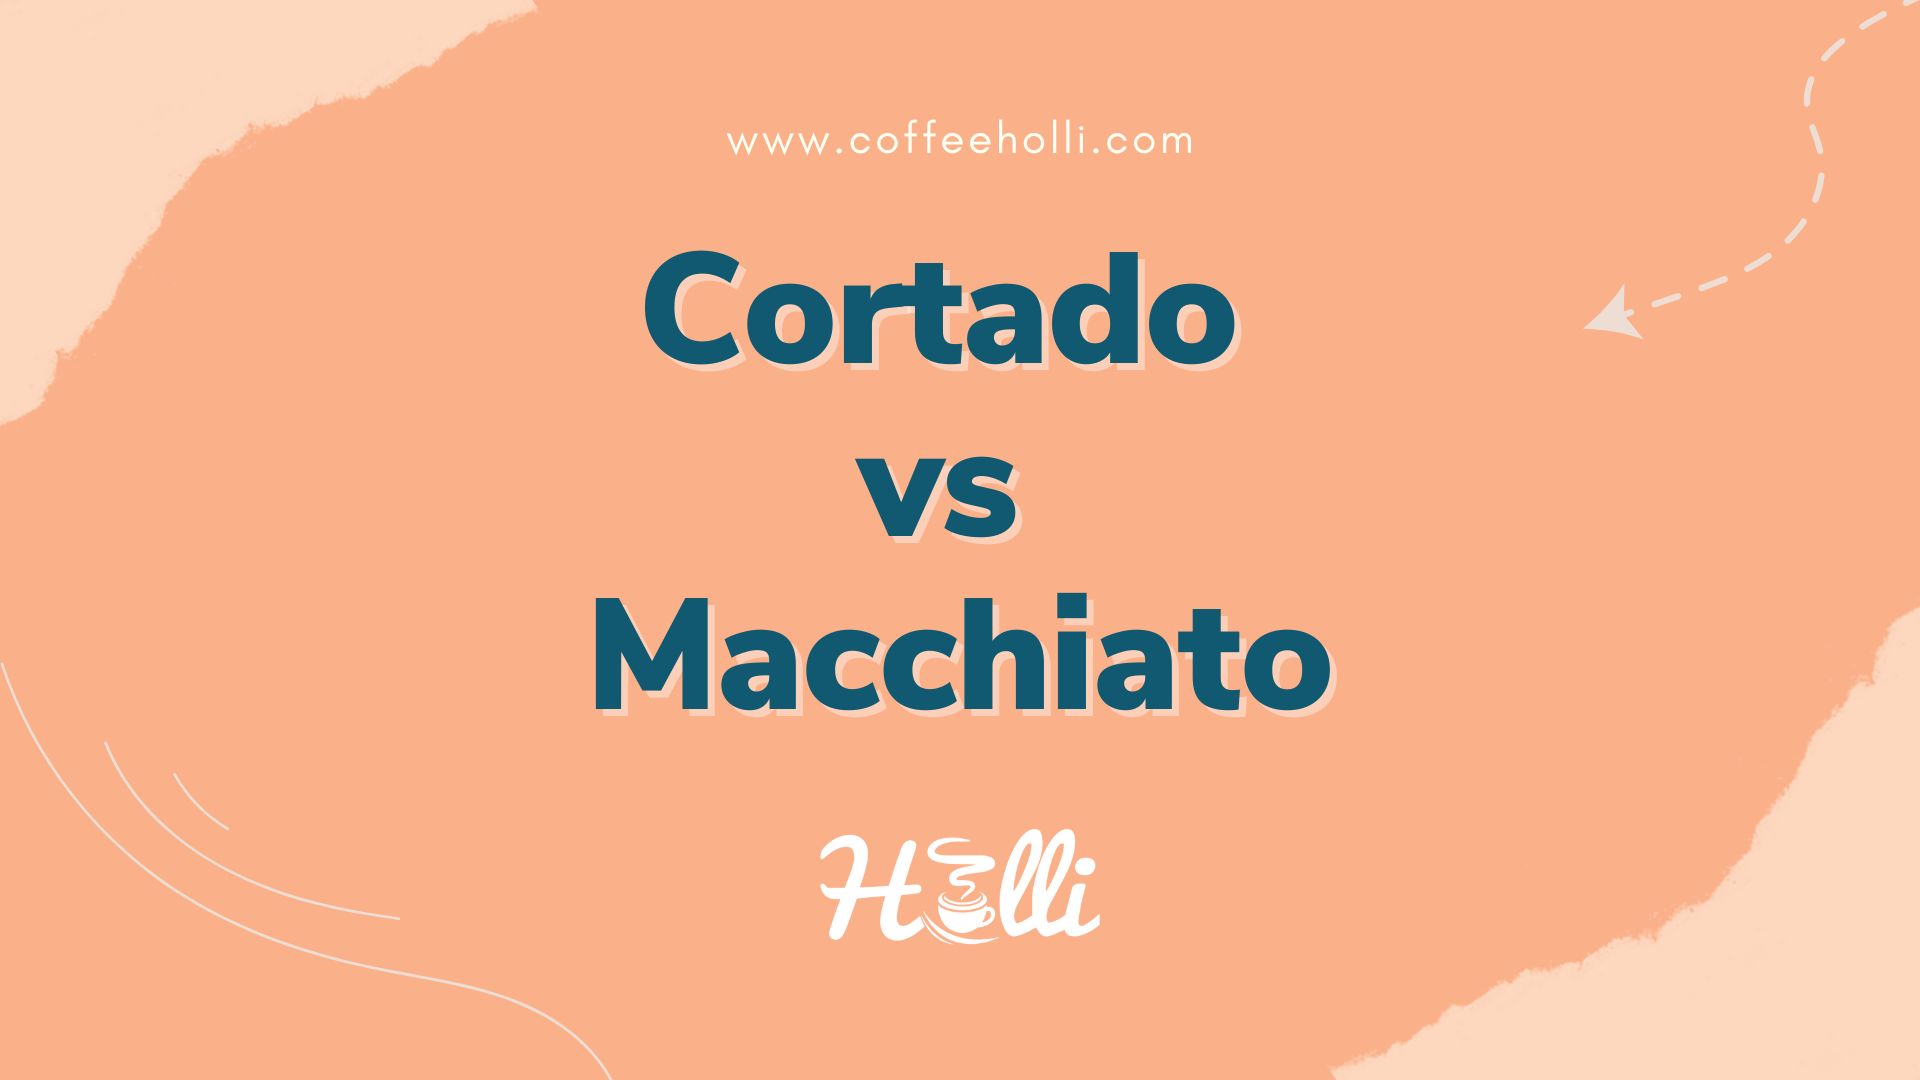 Cortado vs Macchiato